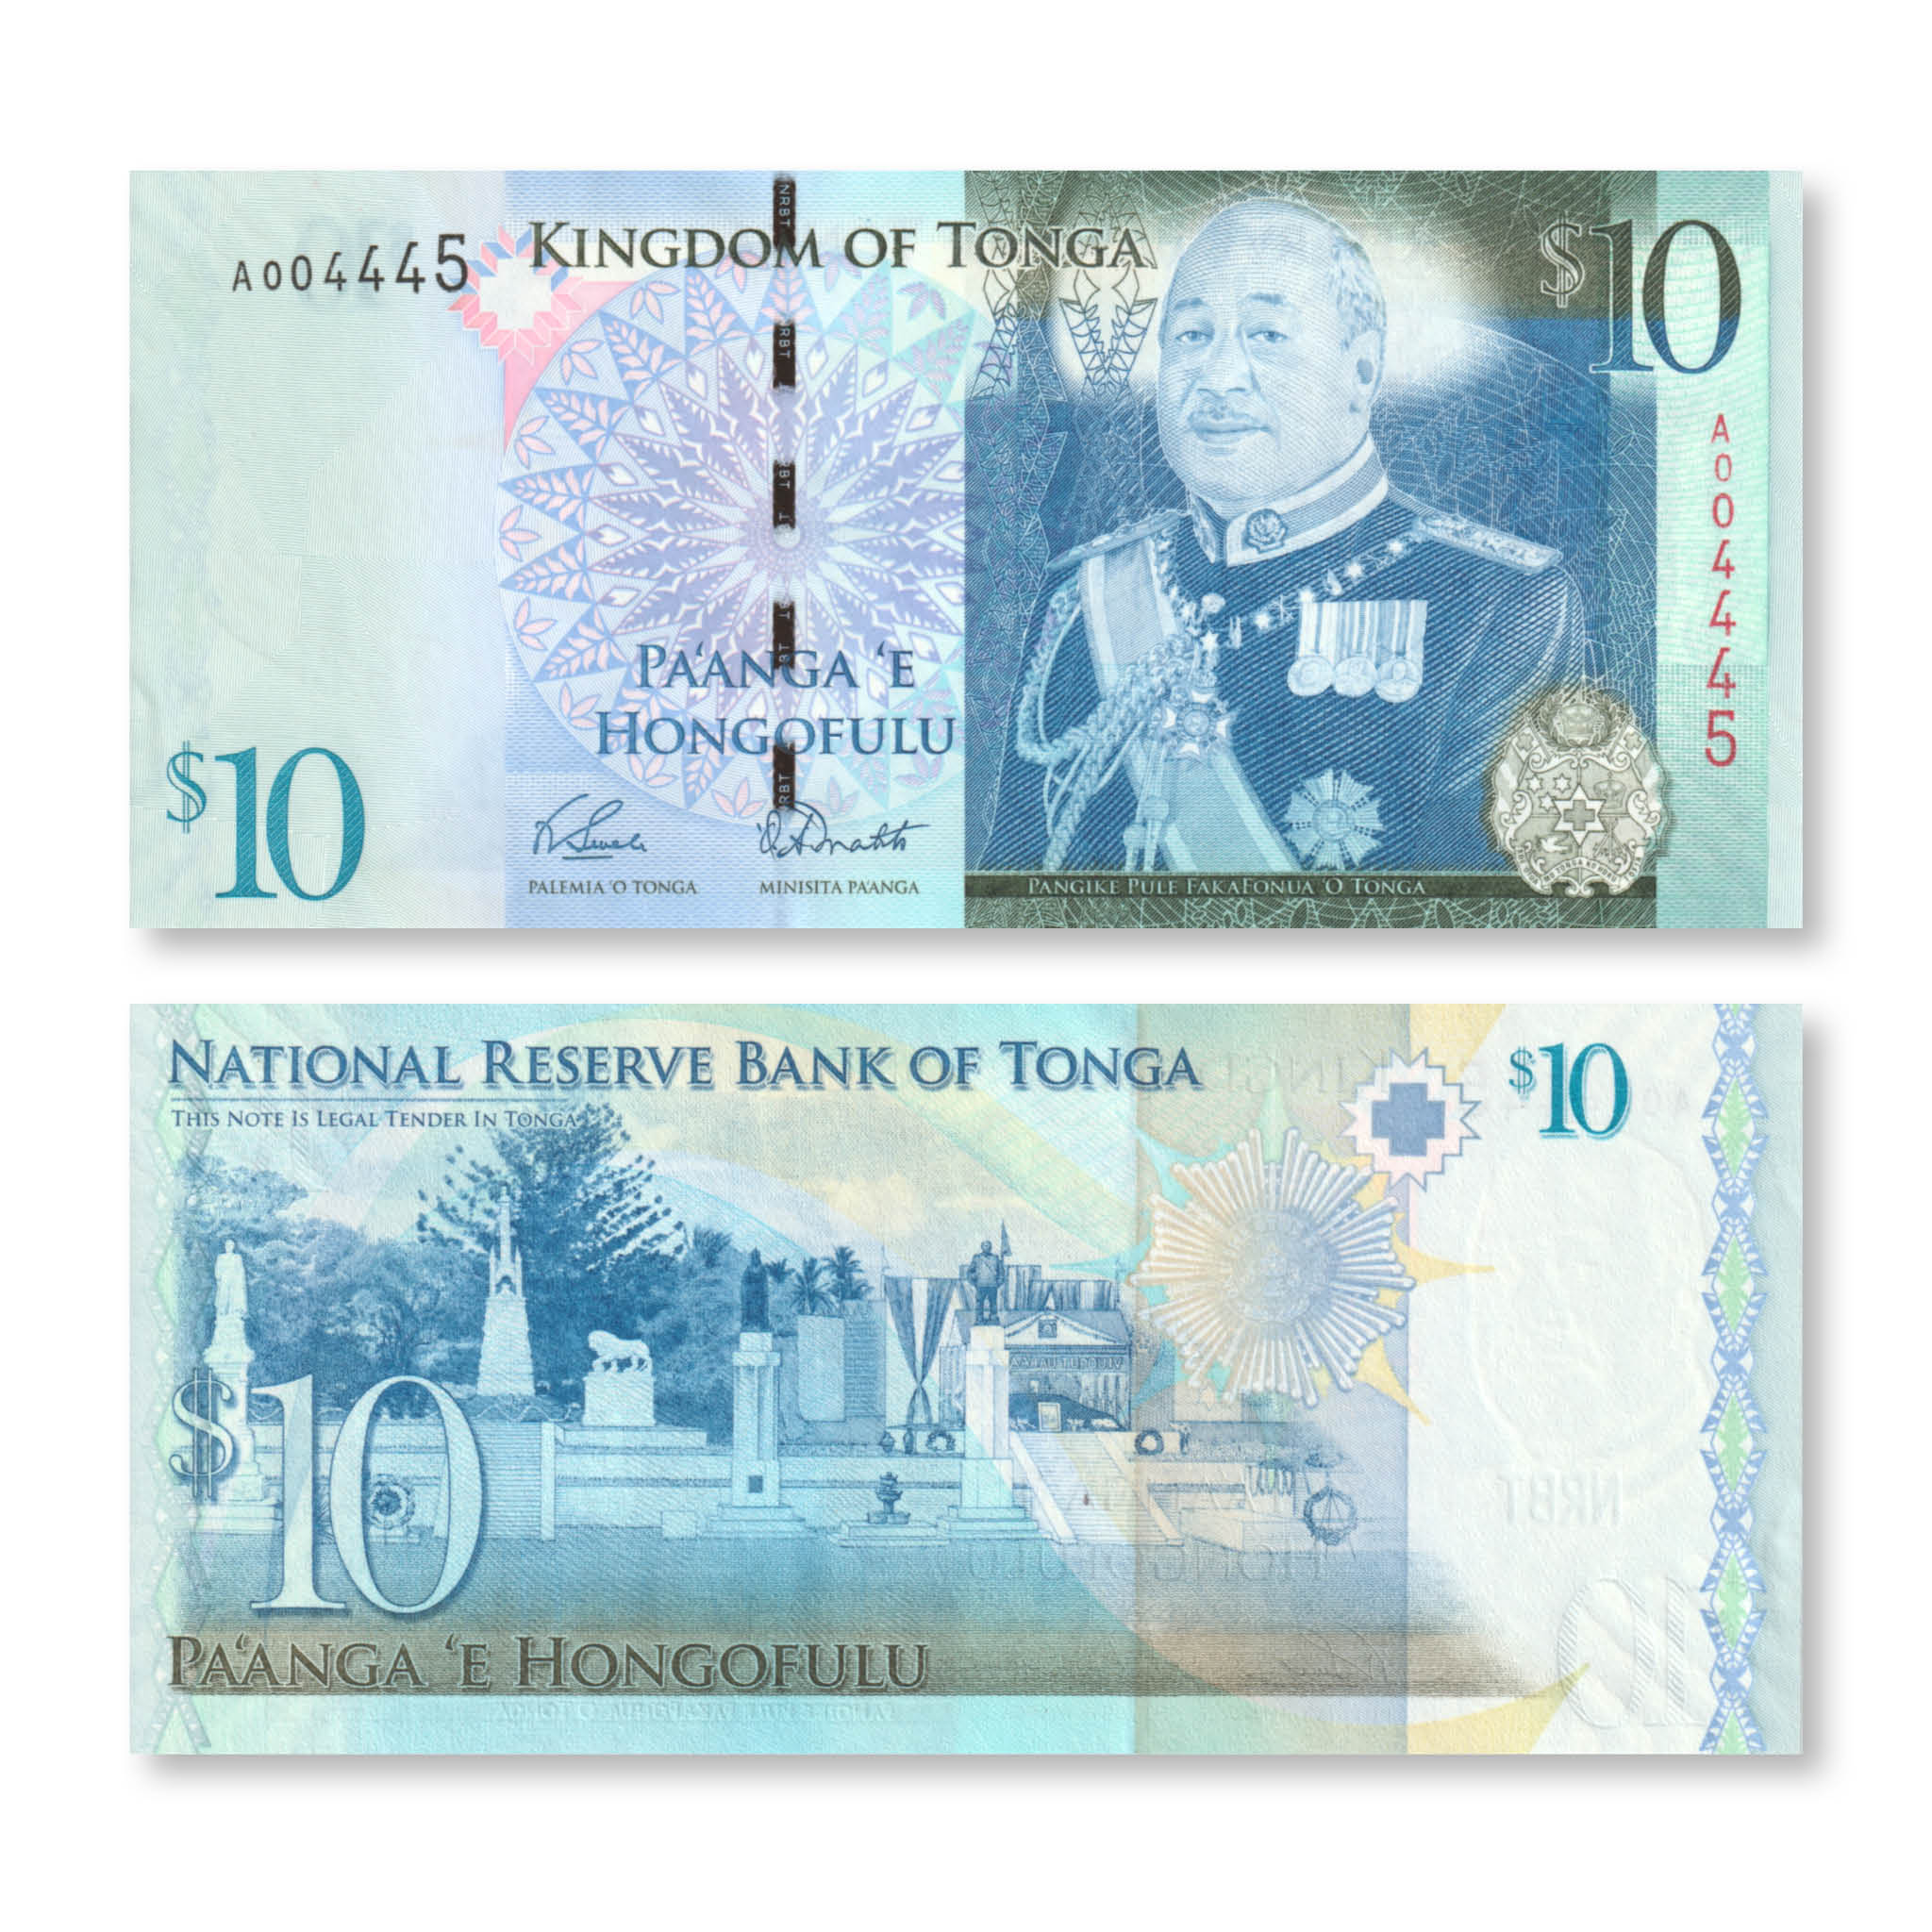 Tonga 10 Pa'anga, 2009, B215a, P40, UNC - Robert's World Money - World Banknotes